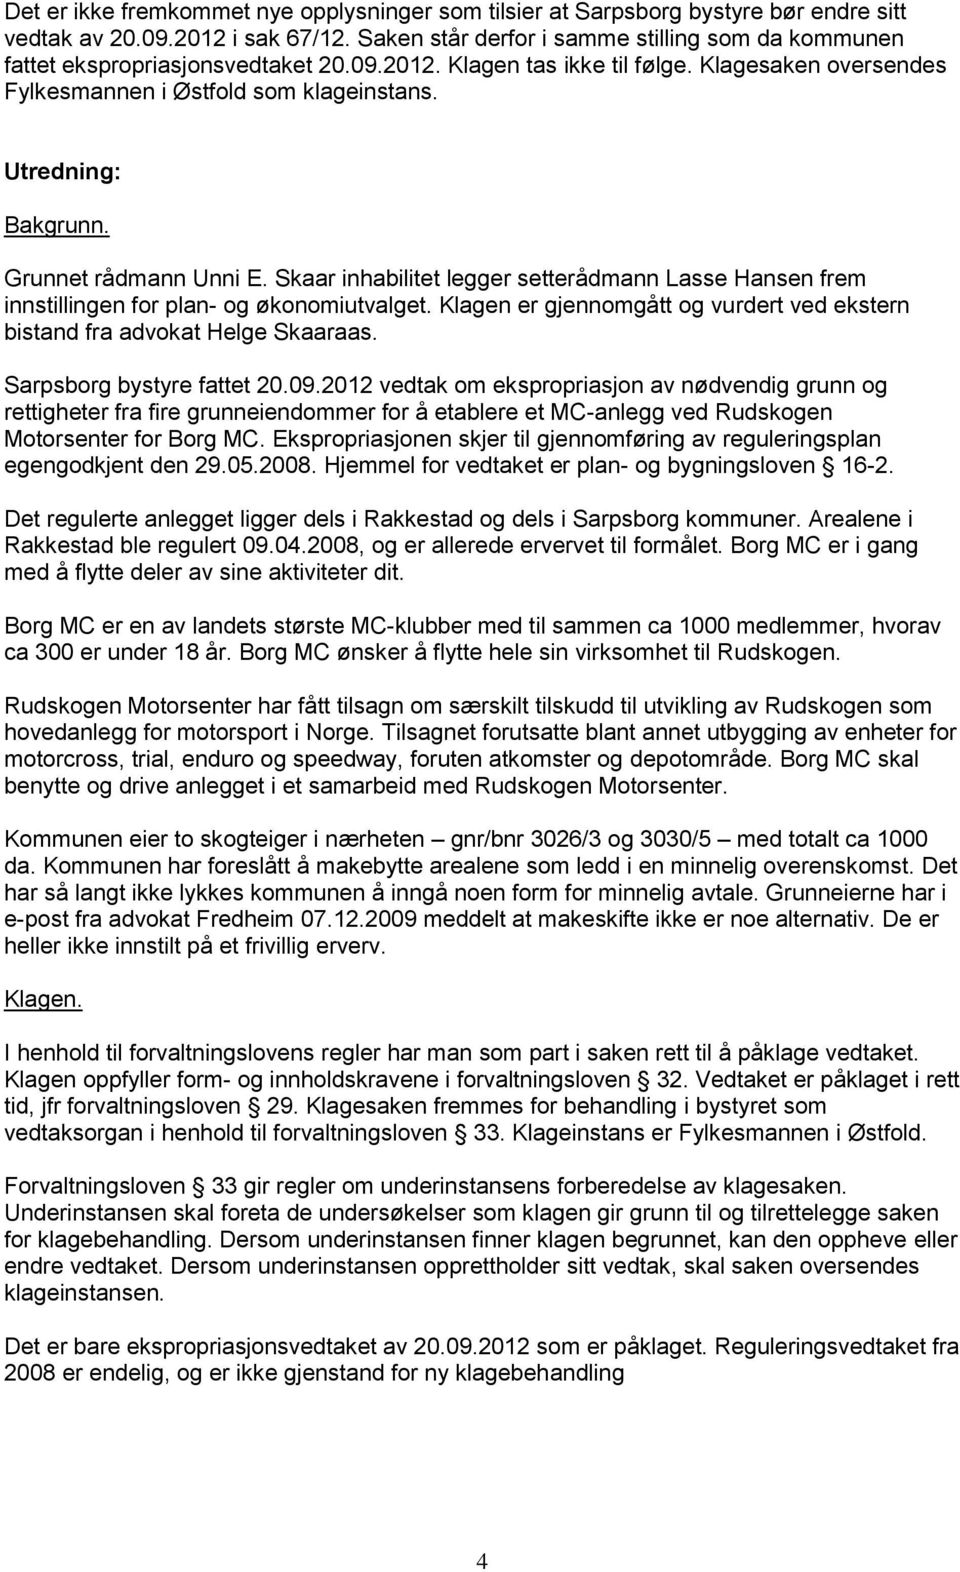 Utredning: Bakgrunn. Grunnet rådmann Unni E. Skaar inhabilitet legger setterådmann Lasse Hansen frem innstillingen for plan- og økonomiutvalget.